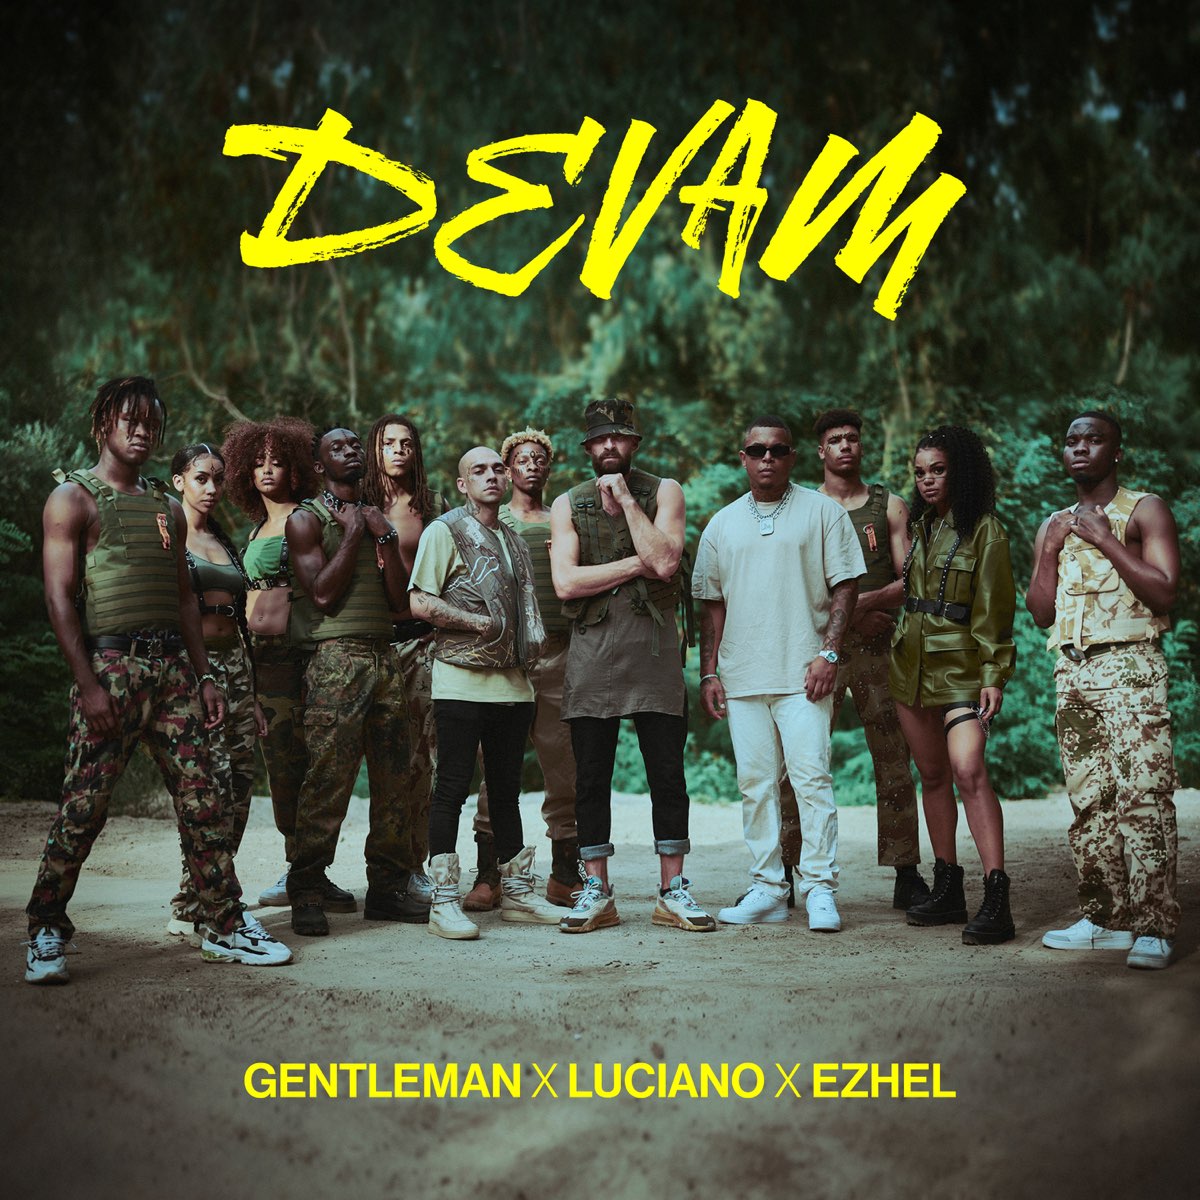 Devam (feat. Luciano & Ezhel) - Single - Gentleman Adlı Sanatçının Albümü -  Apple Music